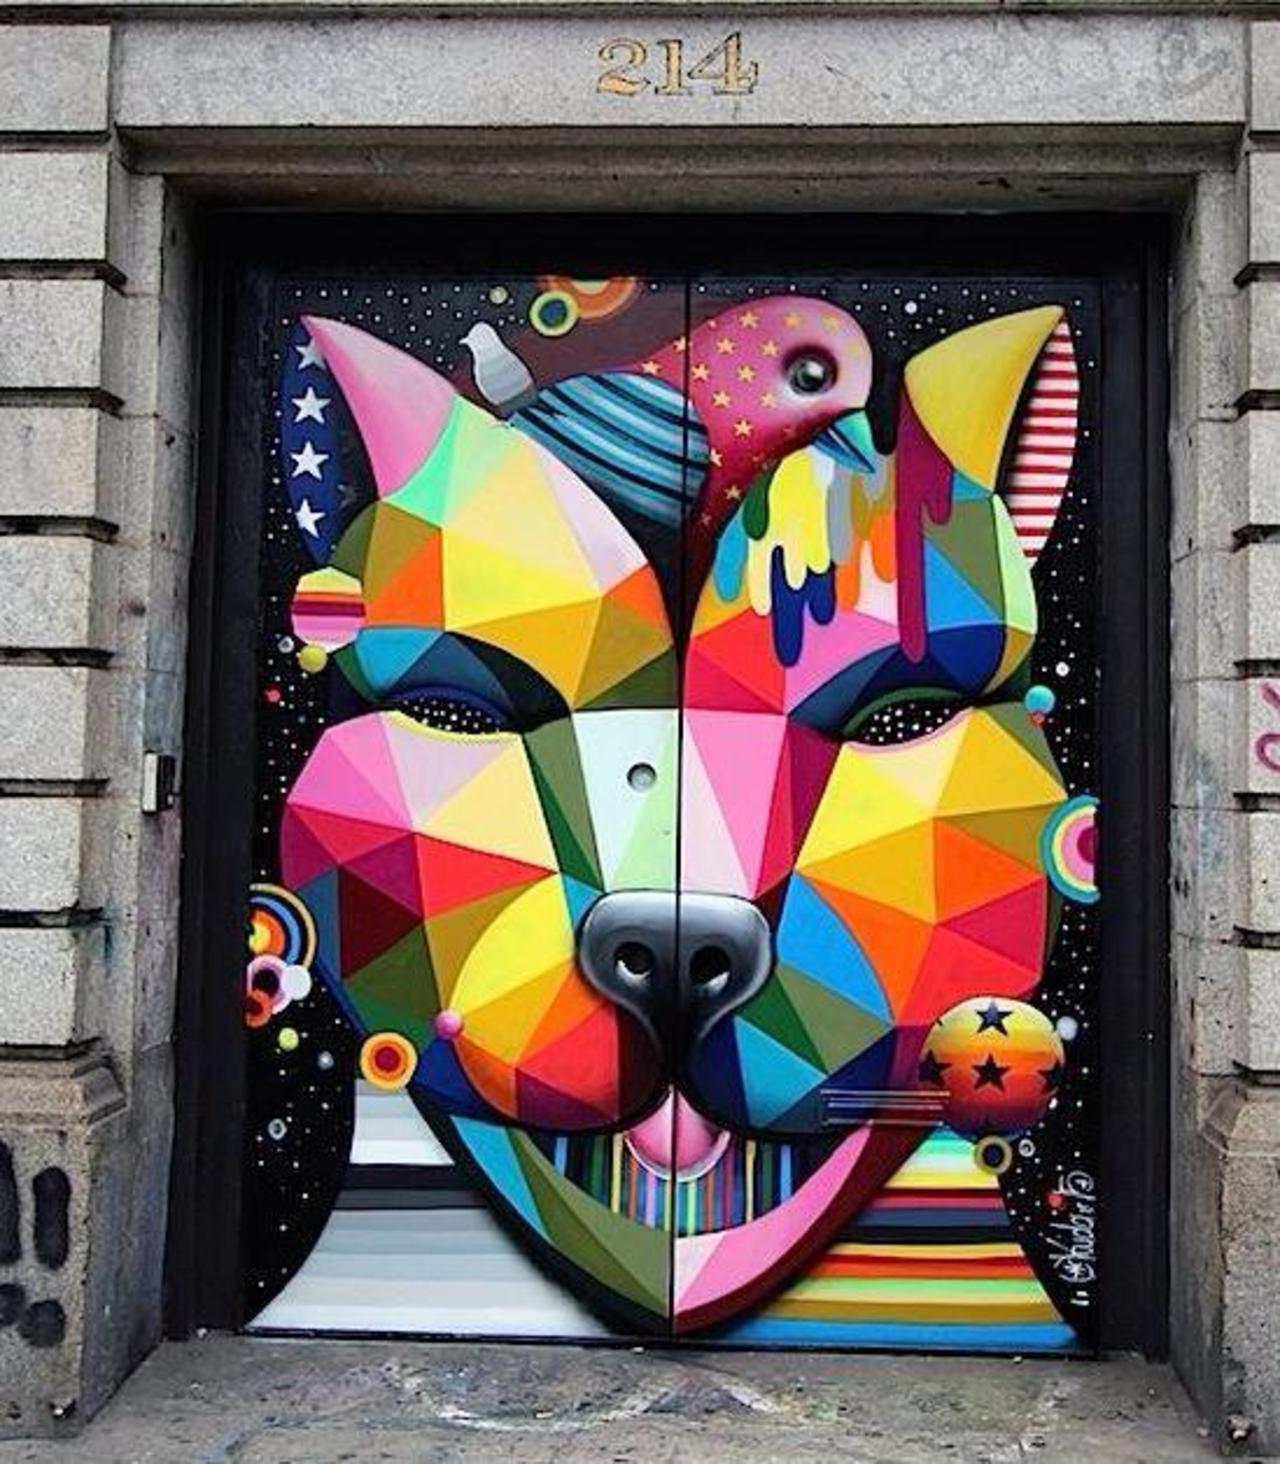 "@GoogleStreetArt: Street Art by OKUDART in Soho, NY 

#art #arte #graffiti #streetart http://t.co/Xgg3AWbkWl"